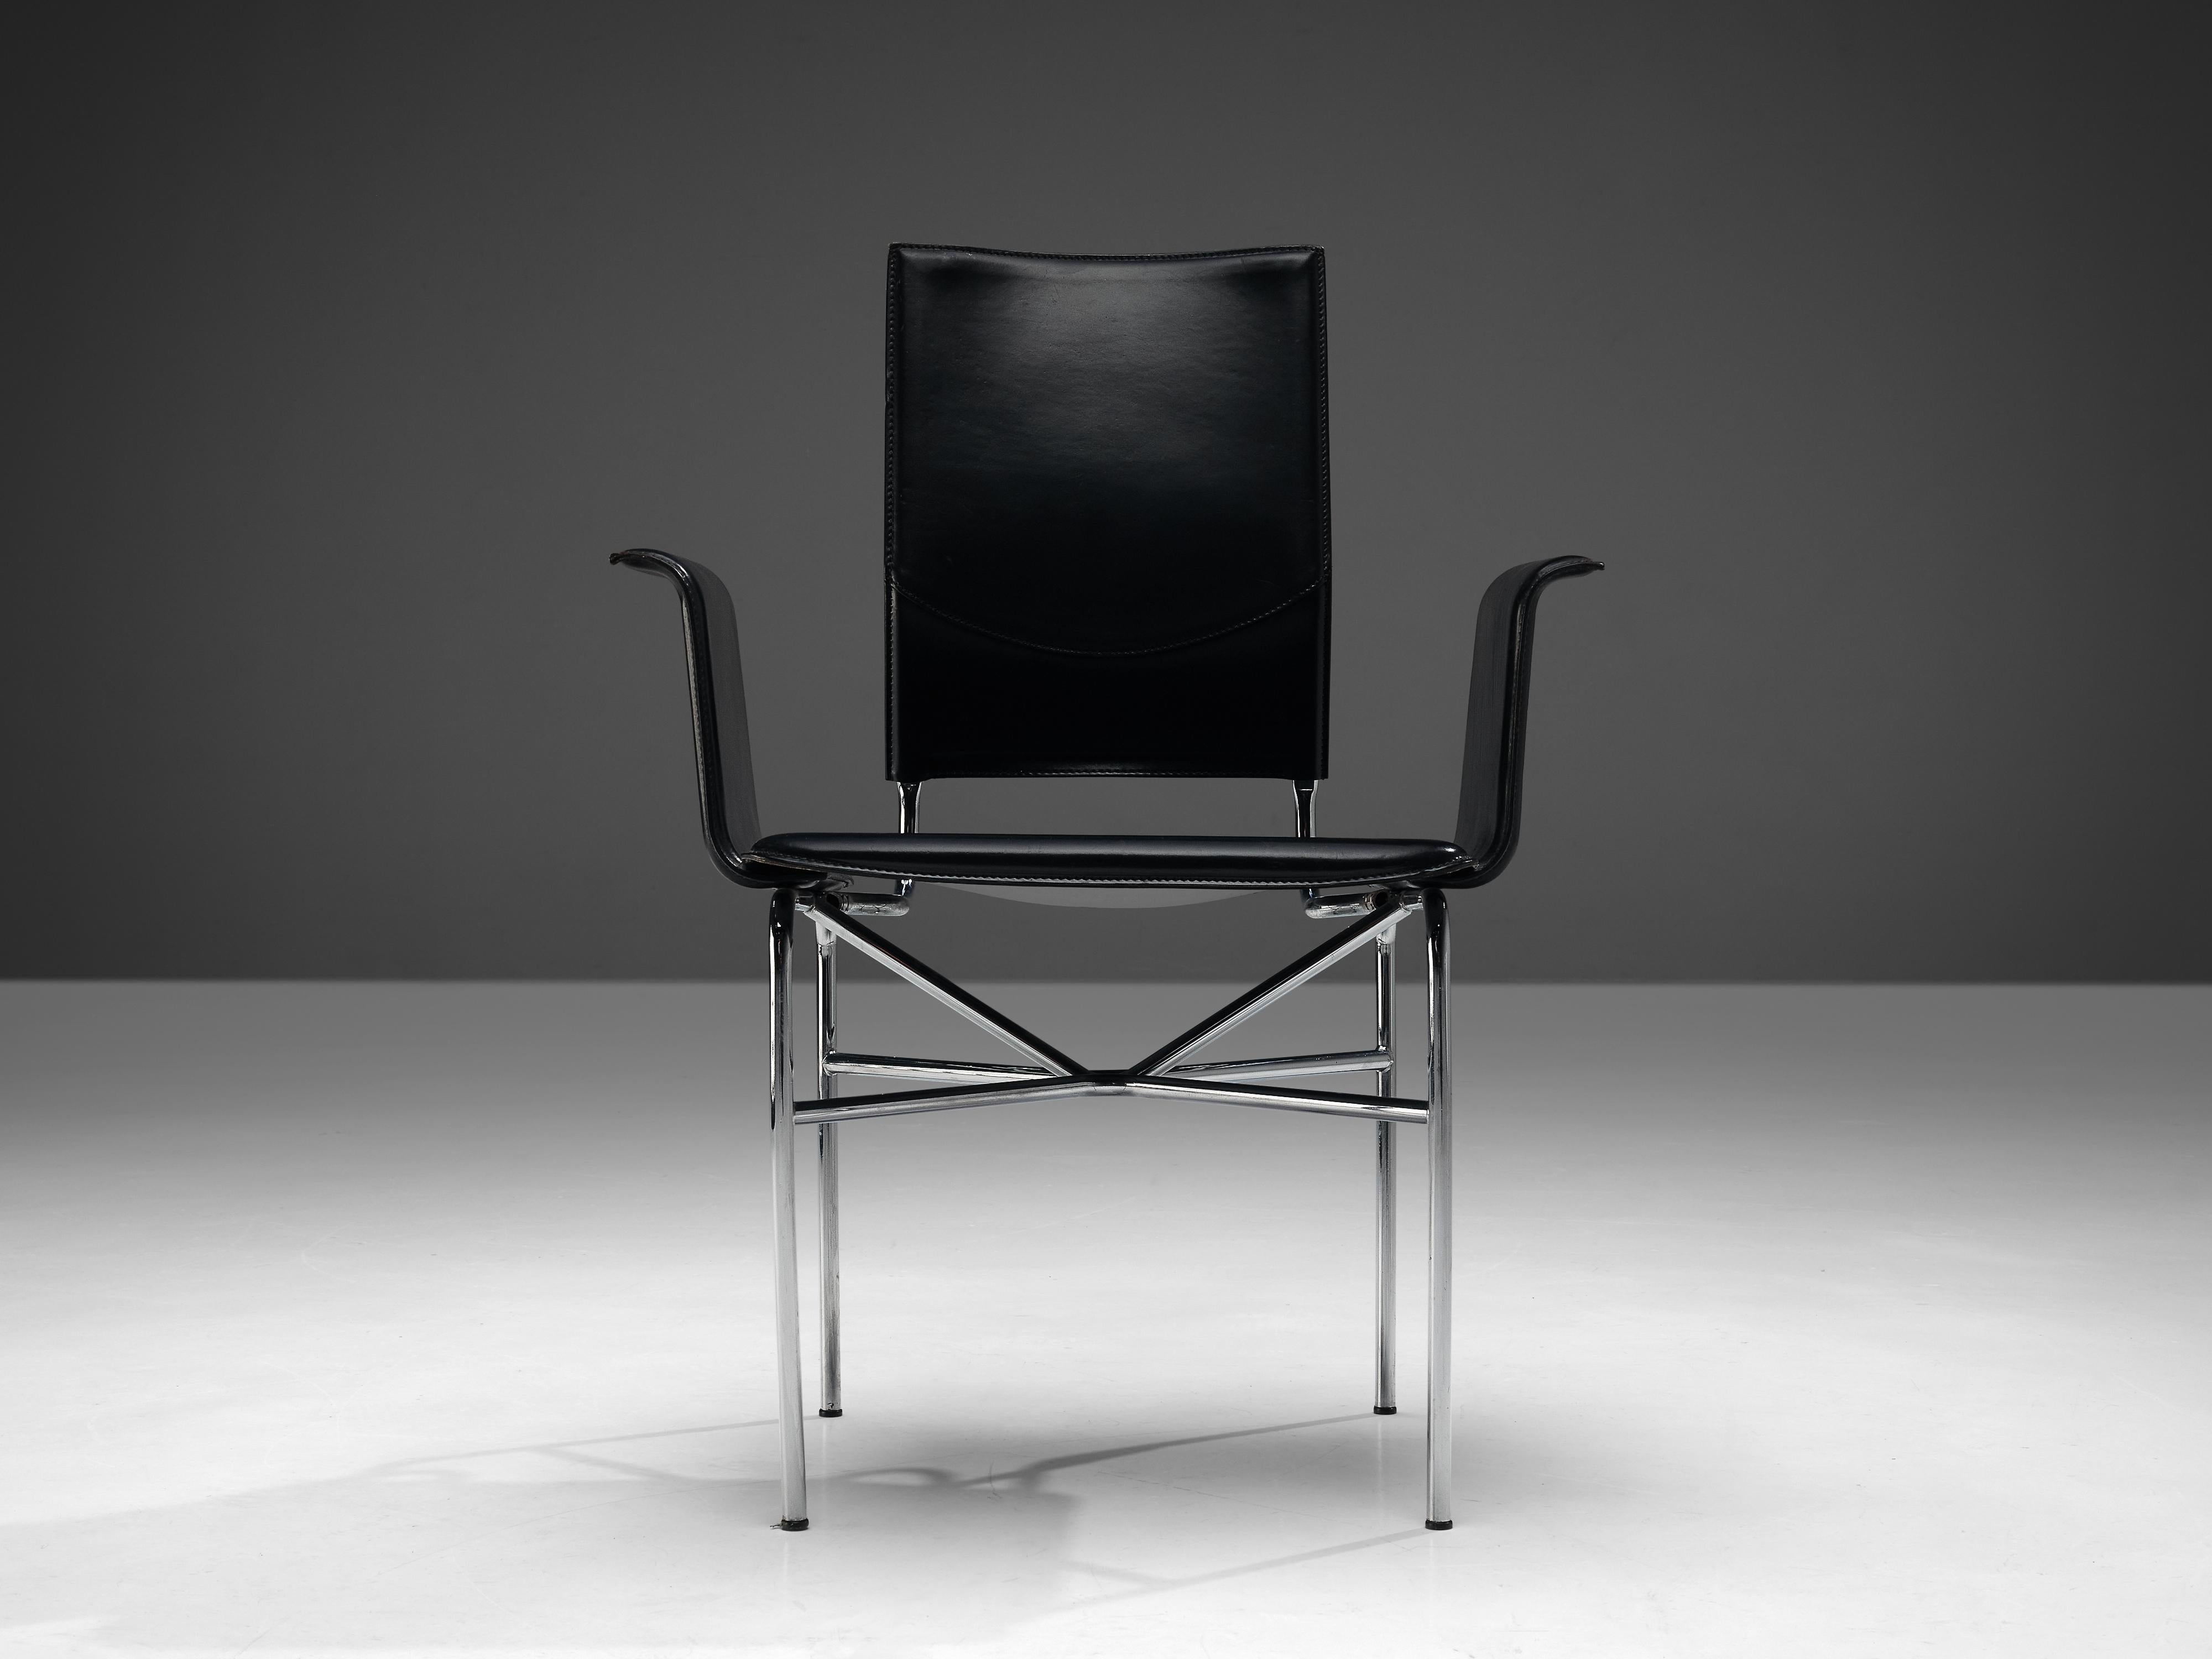 Ross Littell für Matteo Grassi, Sessel, Leder, Stahl, Italien, 1980er

Dieser schwarze Lederstuhl wurde von dem amerikanischen Designer Ross Littell (1924-2000) für Matteo Grassi entworfen. Littell kam auf dieses Design während seines